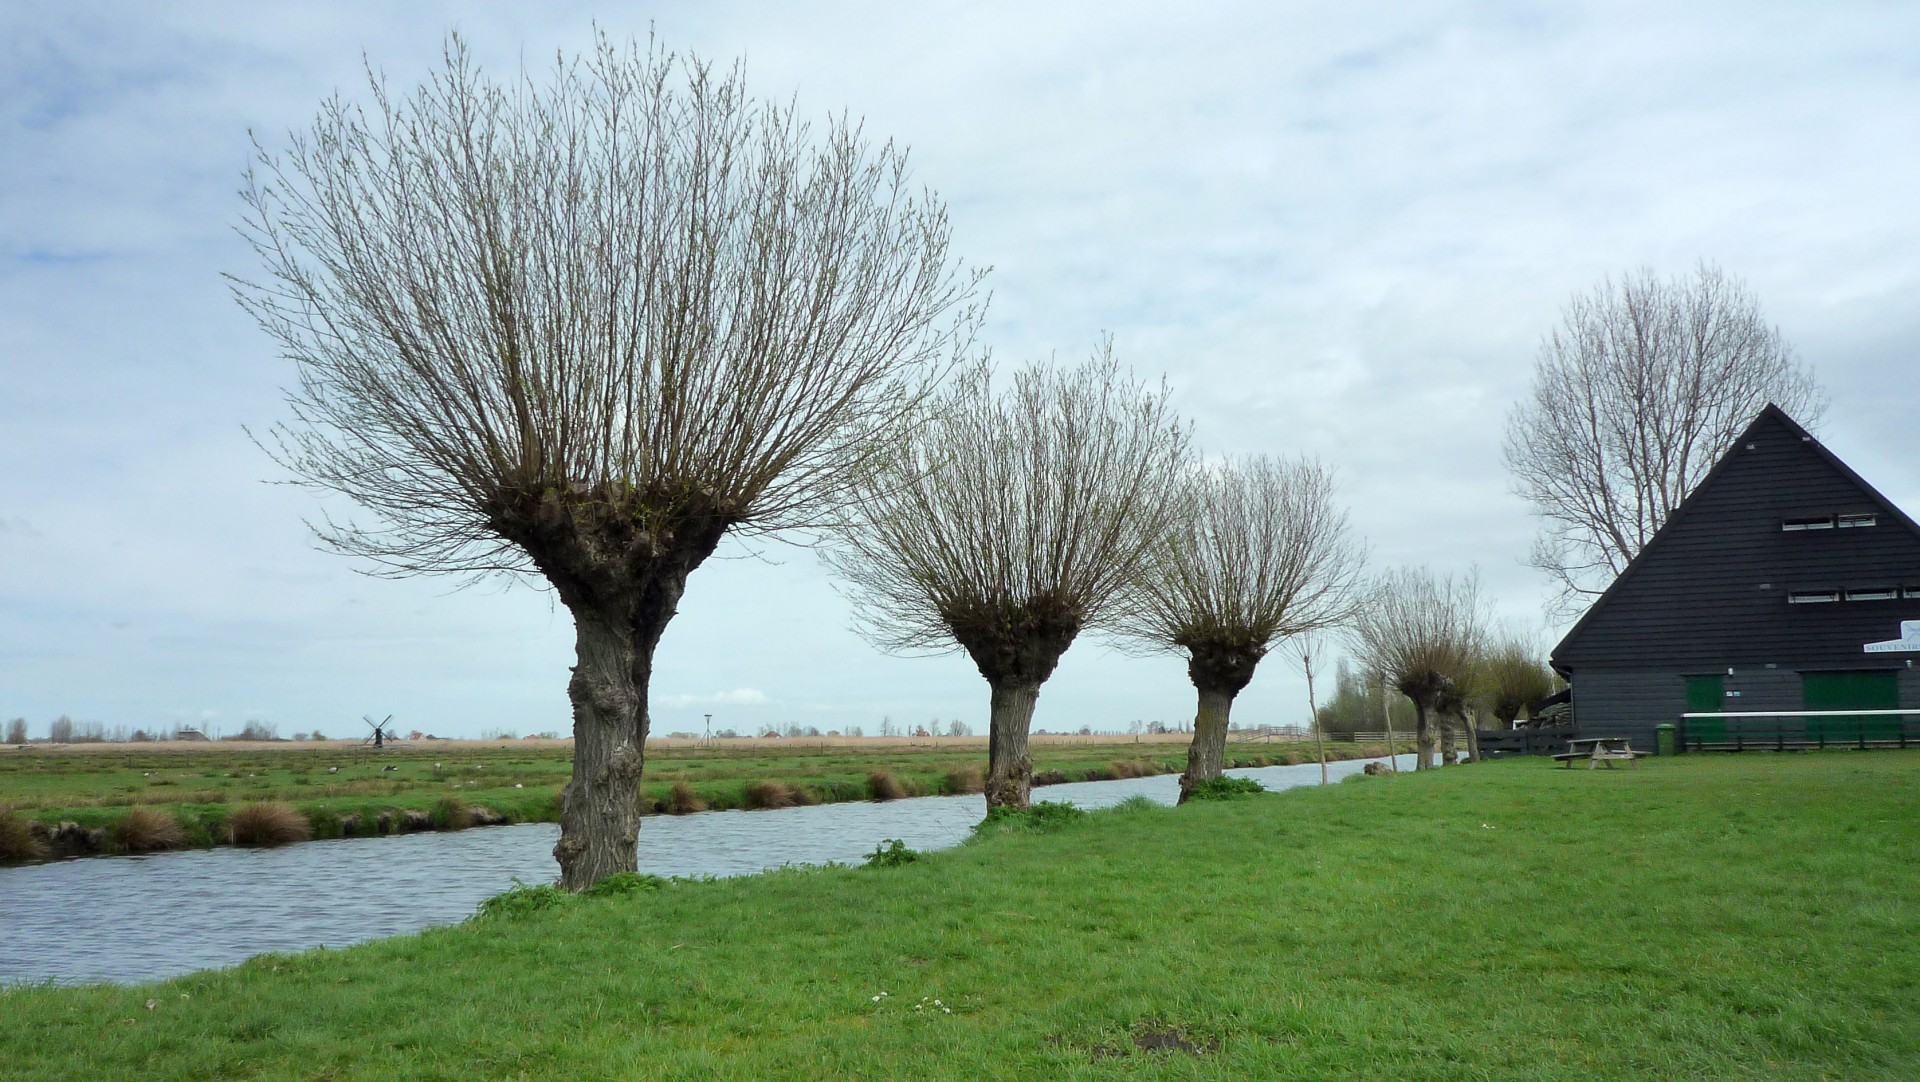 pollard willows knotwilgen pollard willows in dutch landscape free photo